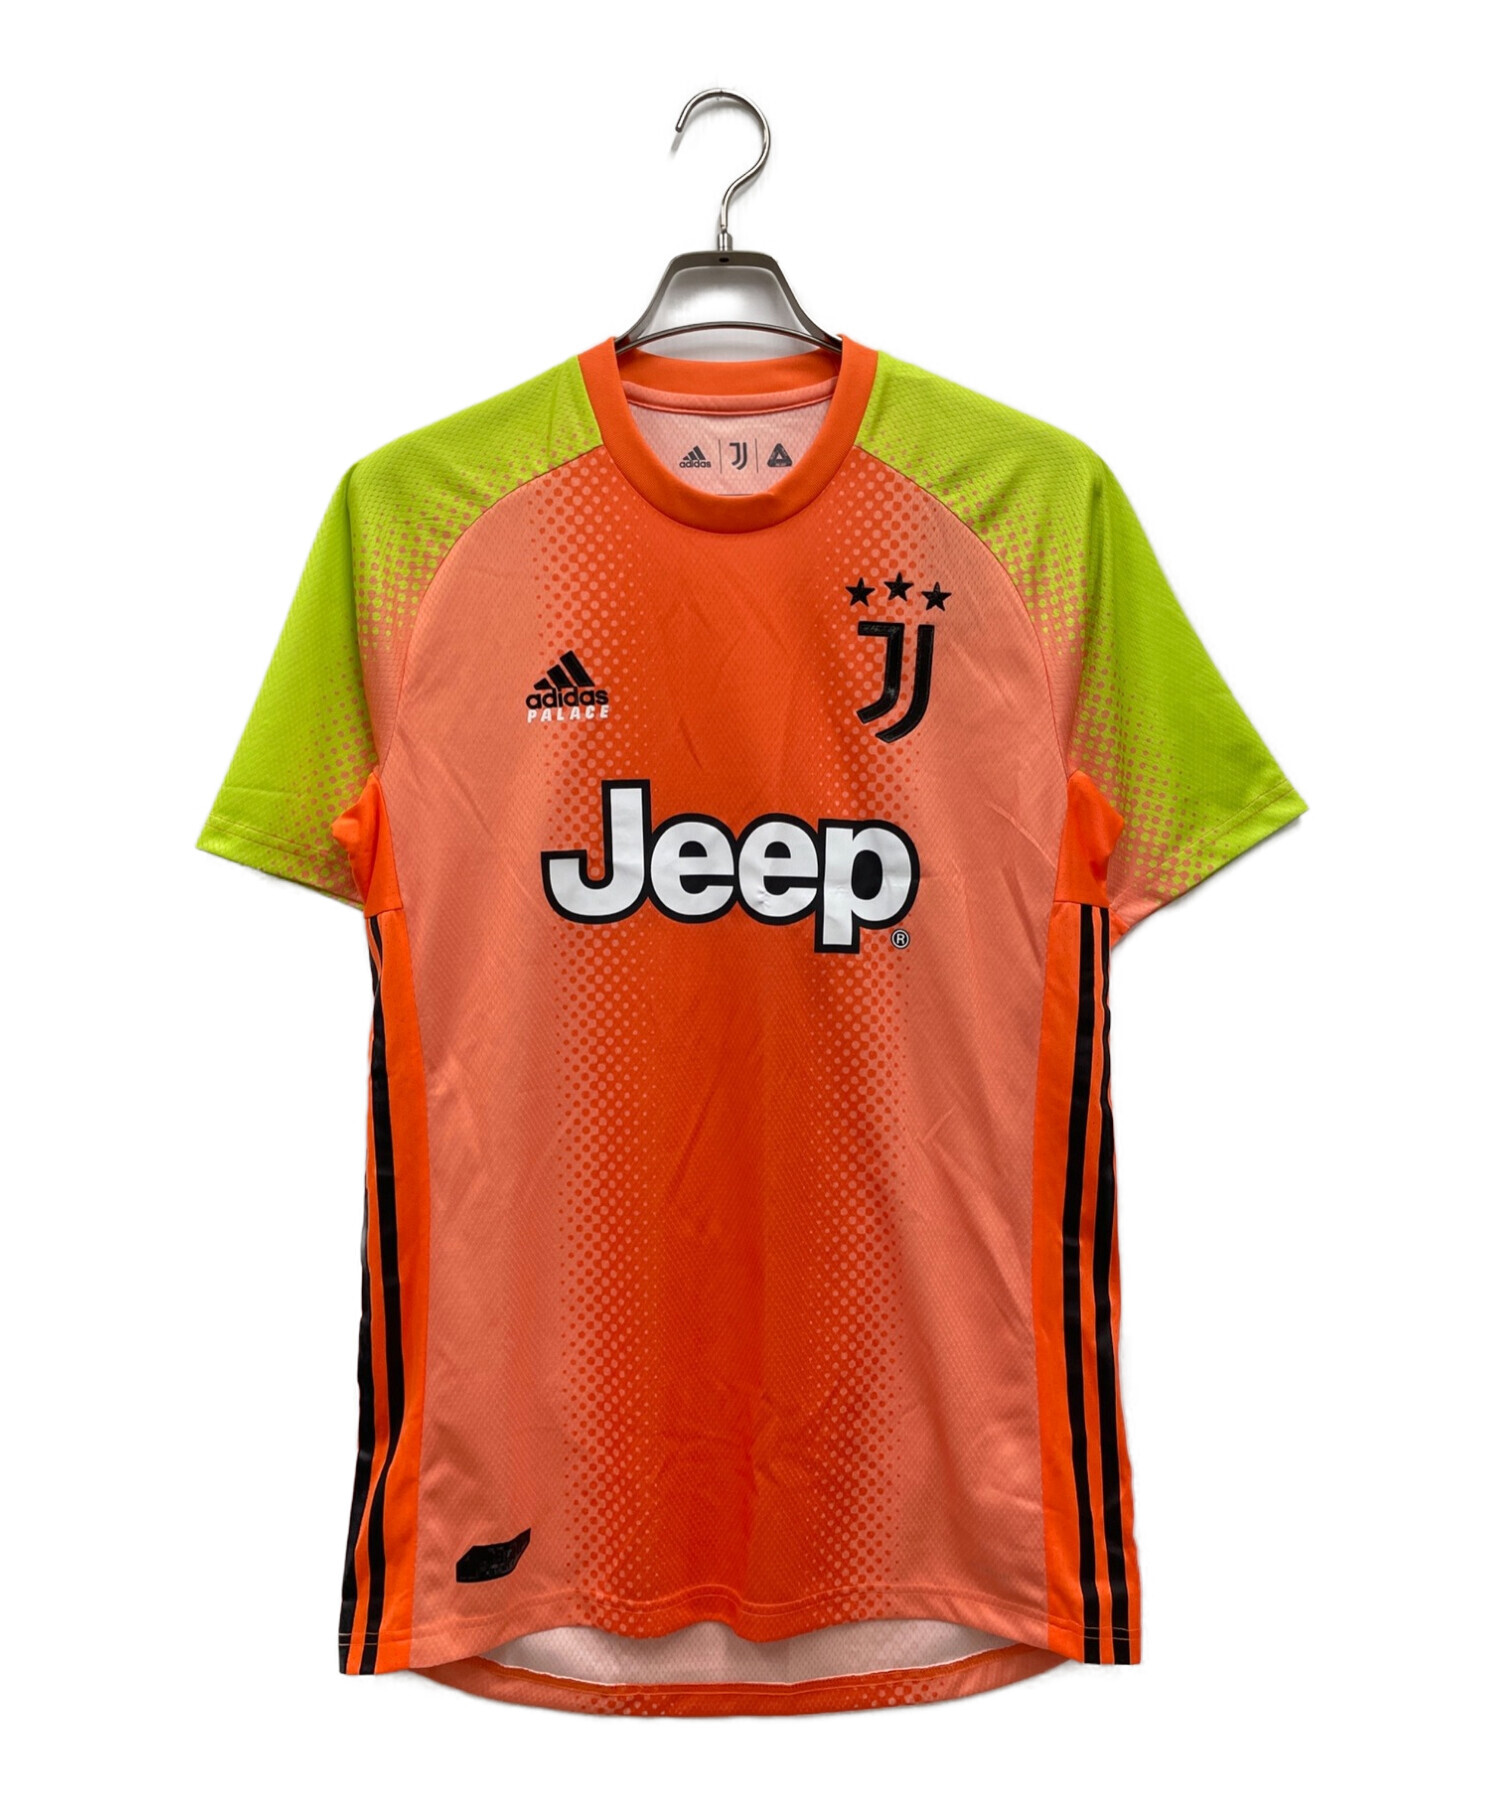 adidas (アディダス) PALACE (パレス) JUVENTUS (ユヴェントス) ゲームシャツ　Fourth Goalkeeper  Jersey オレンジ サイズ:L 未使用品